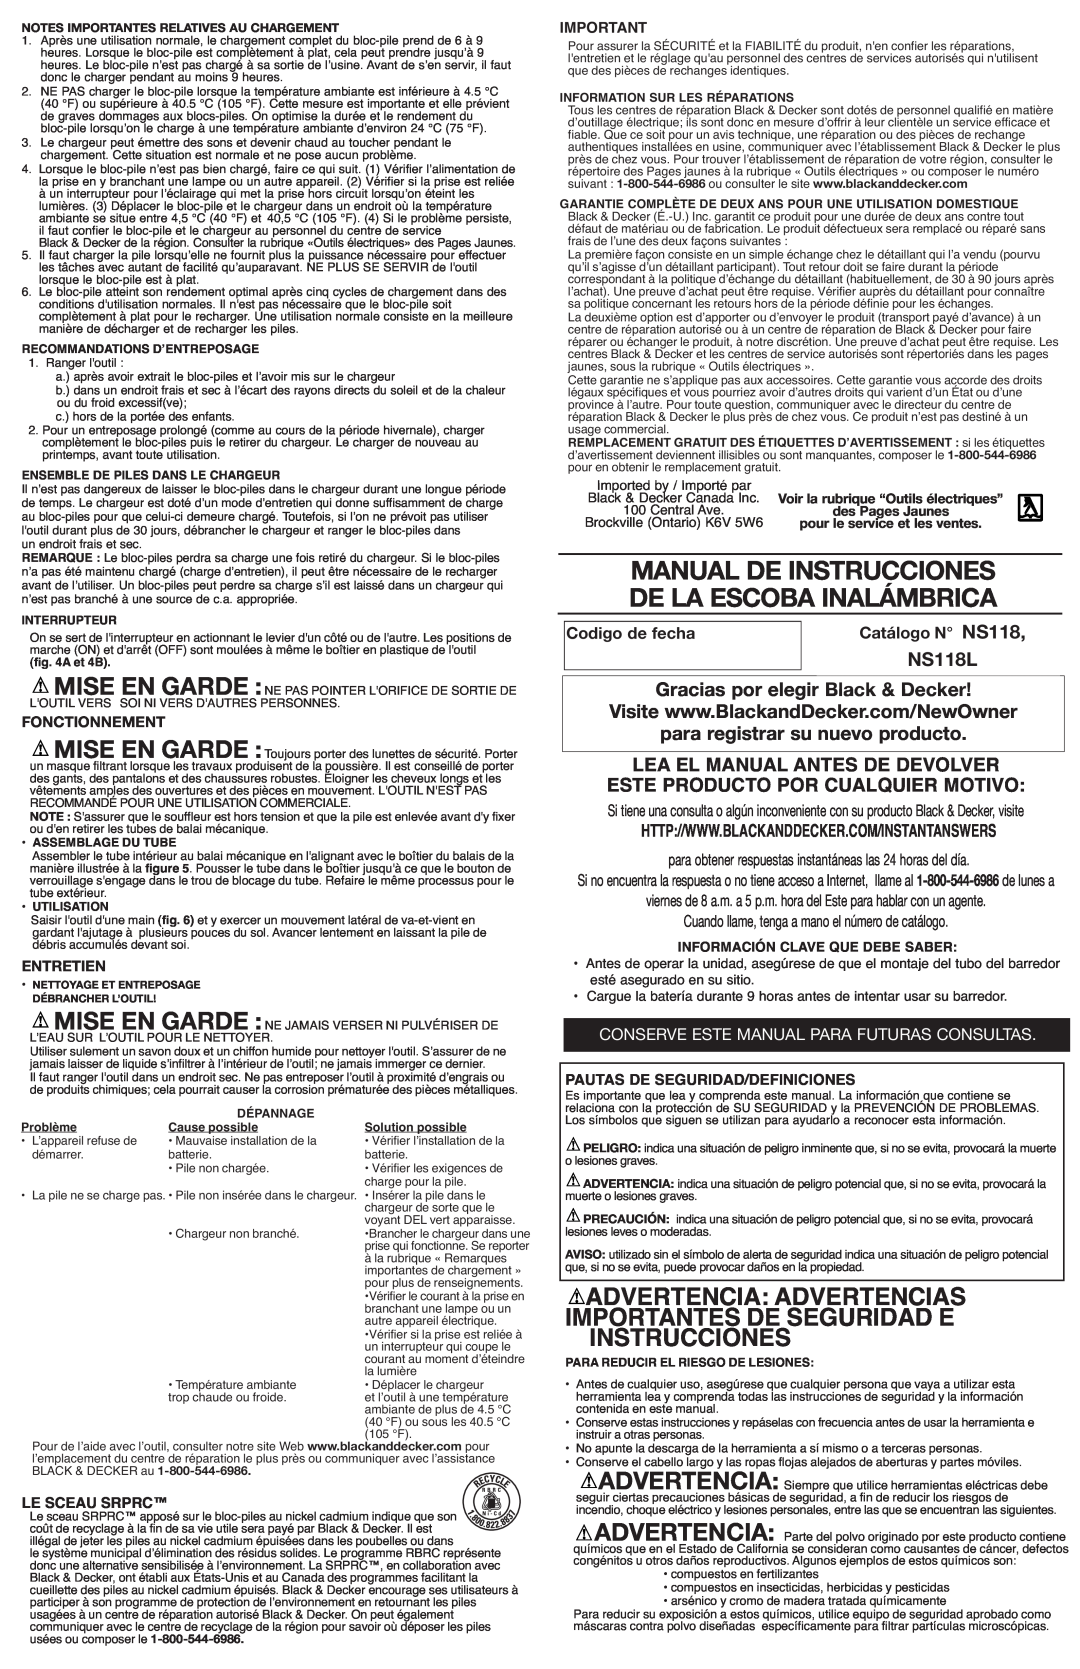 Black & Decker NS118 Manual De Instrucciones De La Escoba Inalámbrica, Importantes De Seguridad E Instrucciones, Entretien 